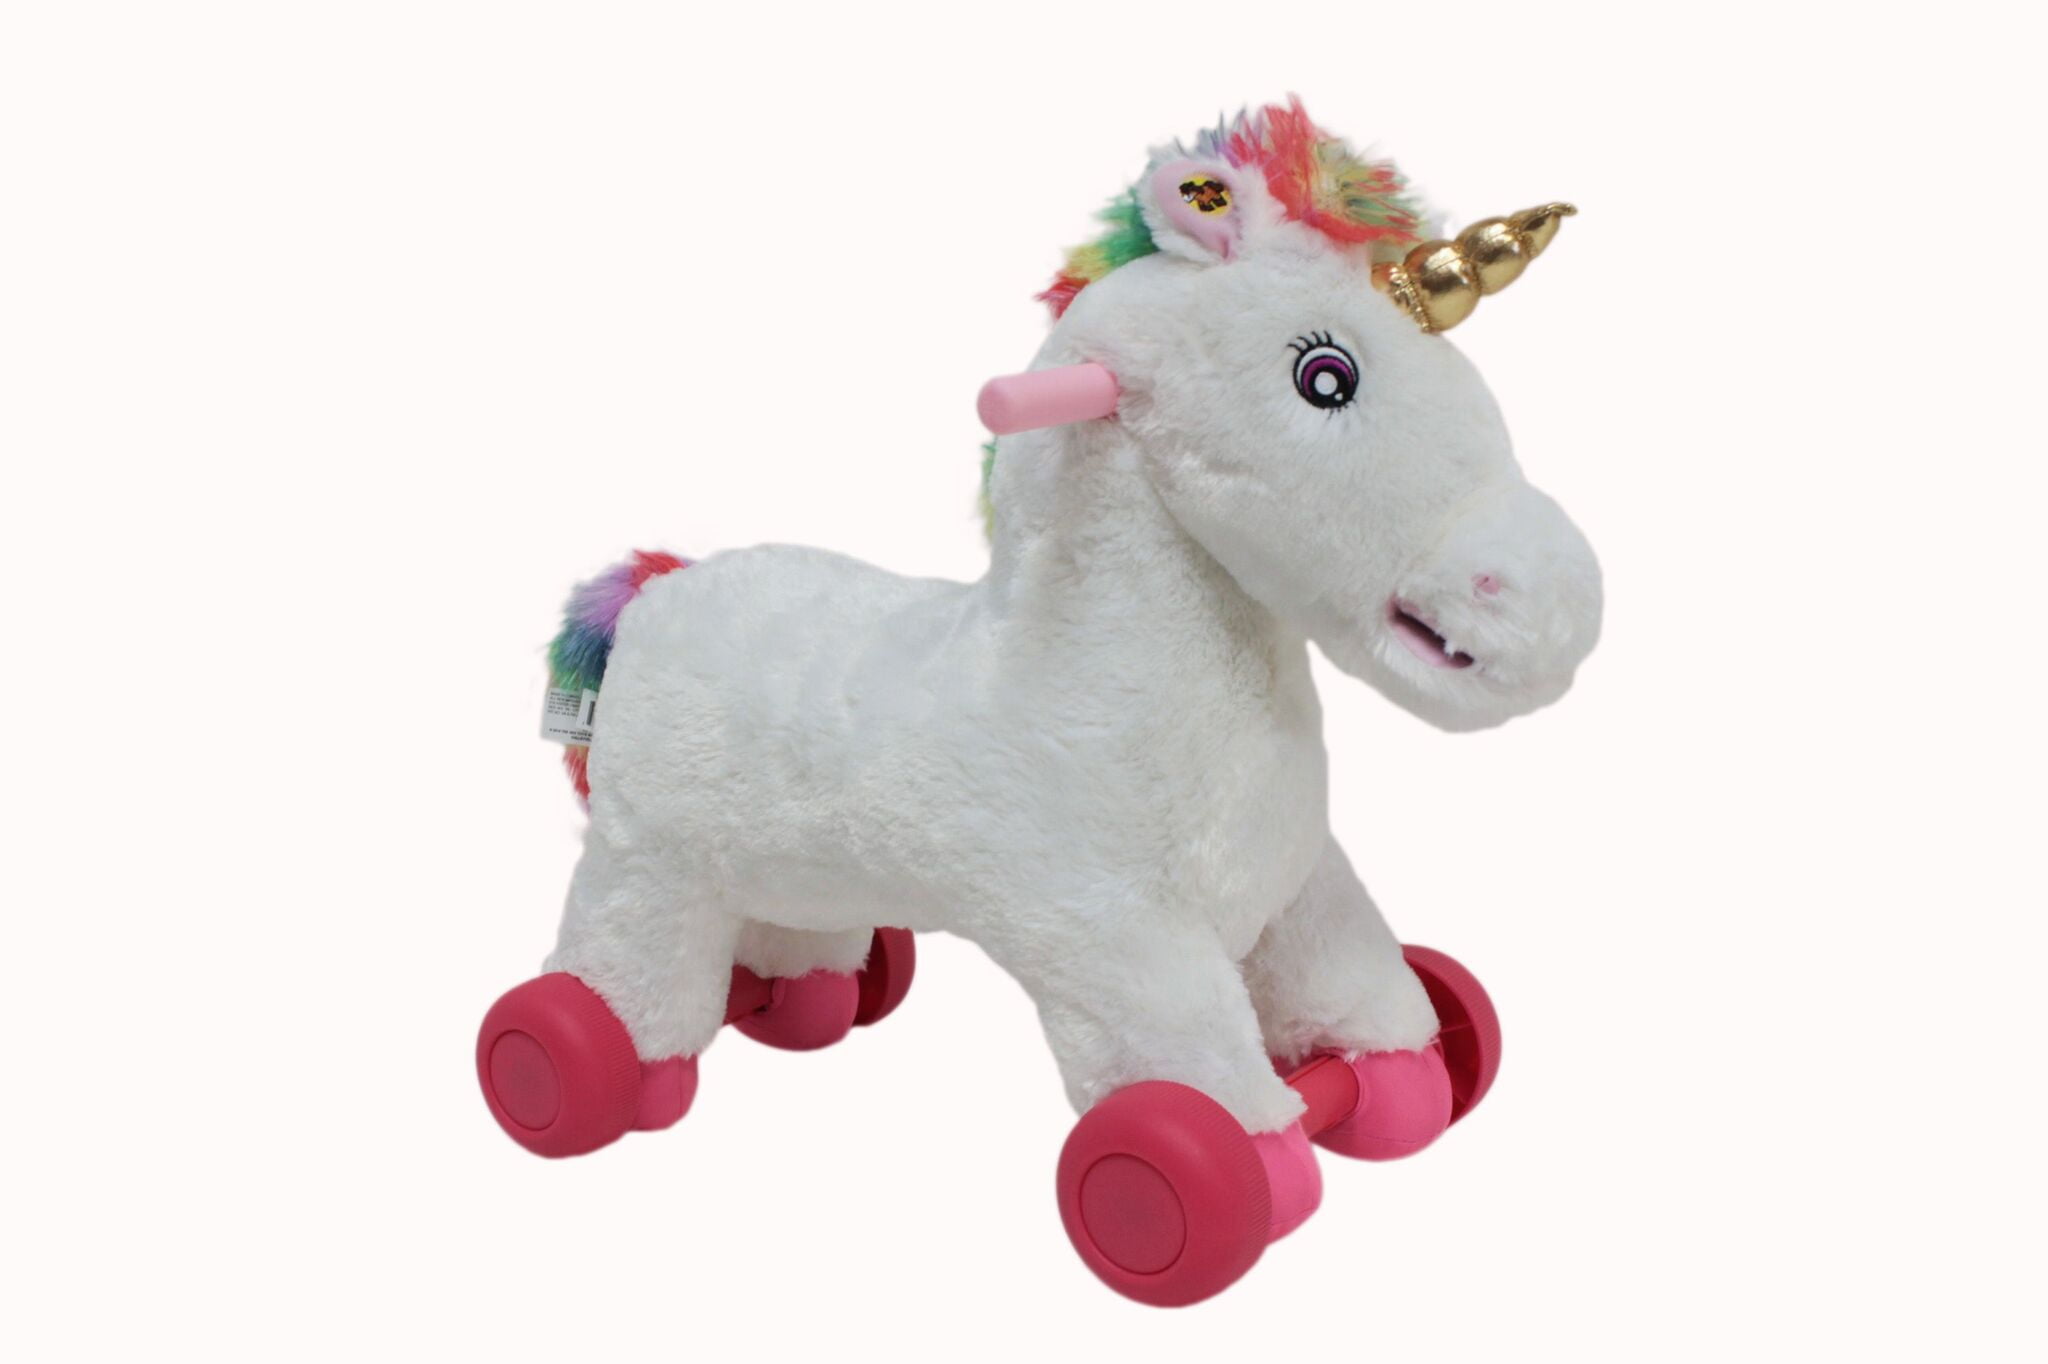 celeste and fae unicorn rocking horse